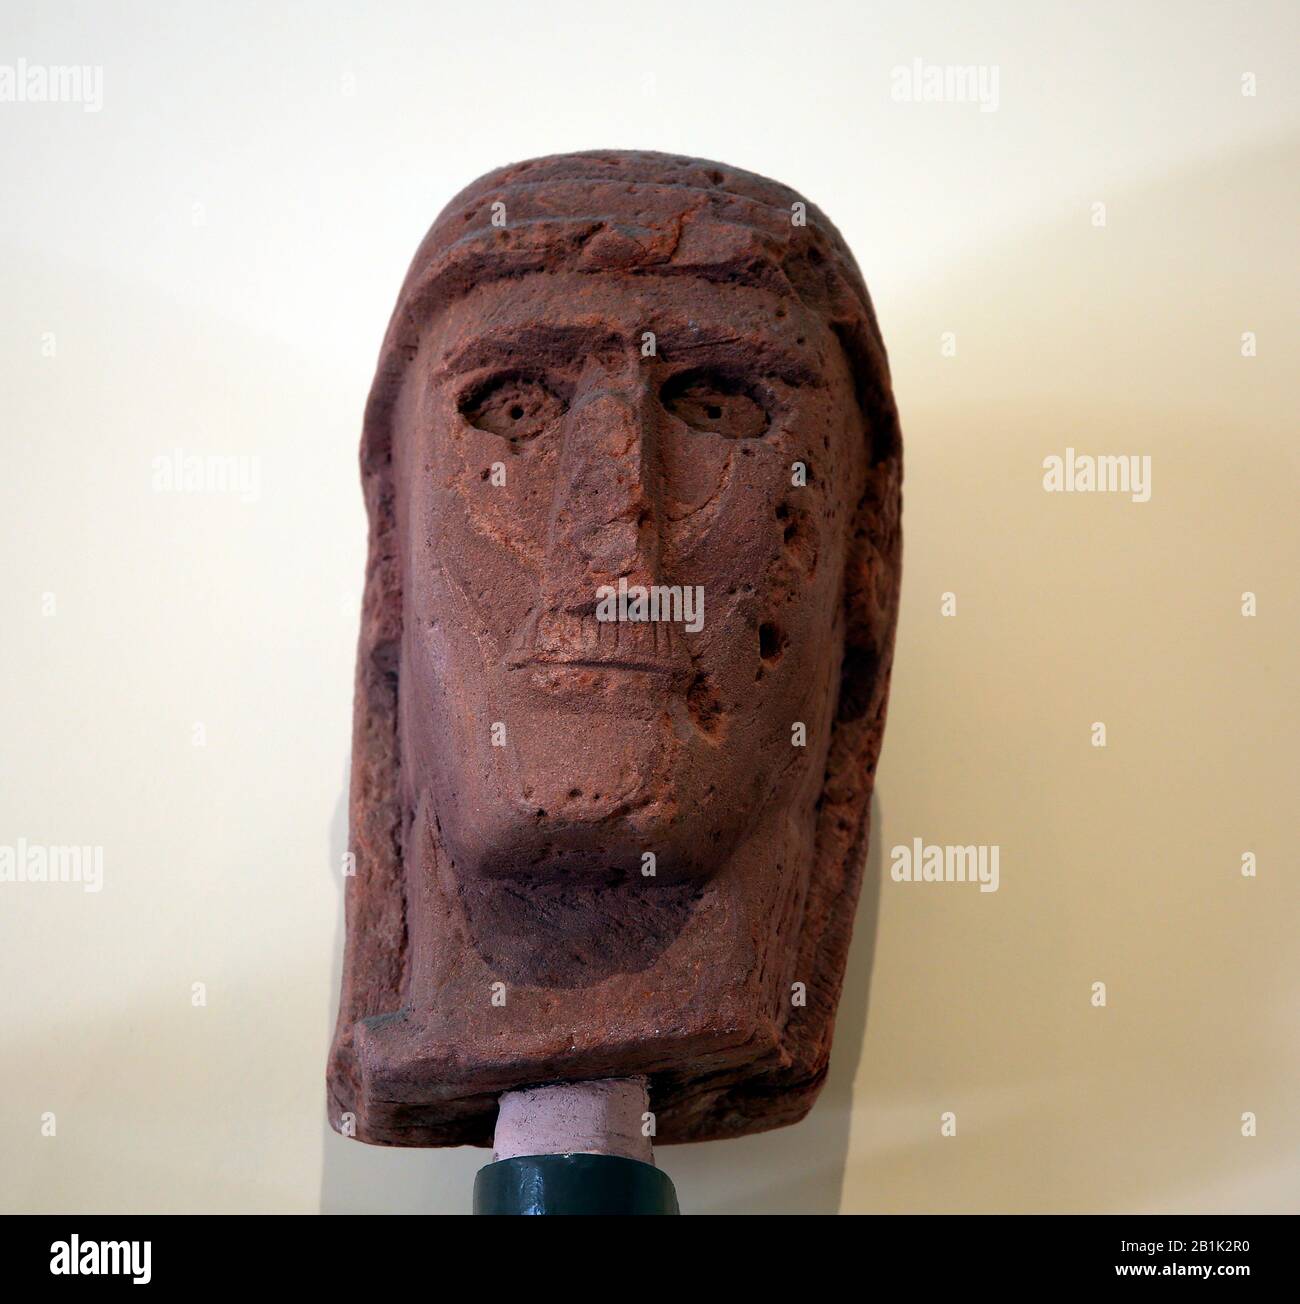 Museo Arqueológico De Estambul. Cabeza de una estatua de Madain Saleh, siglo 3-1 AC. Arenisca. Arabia Saudita. Museo Orient. Turquía. Foto de stock